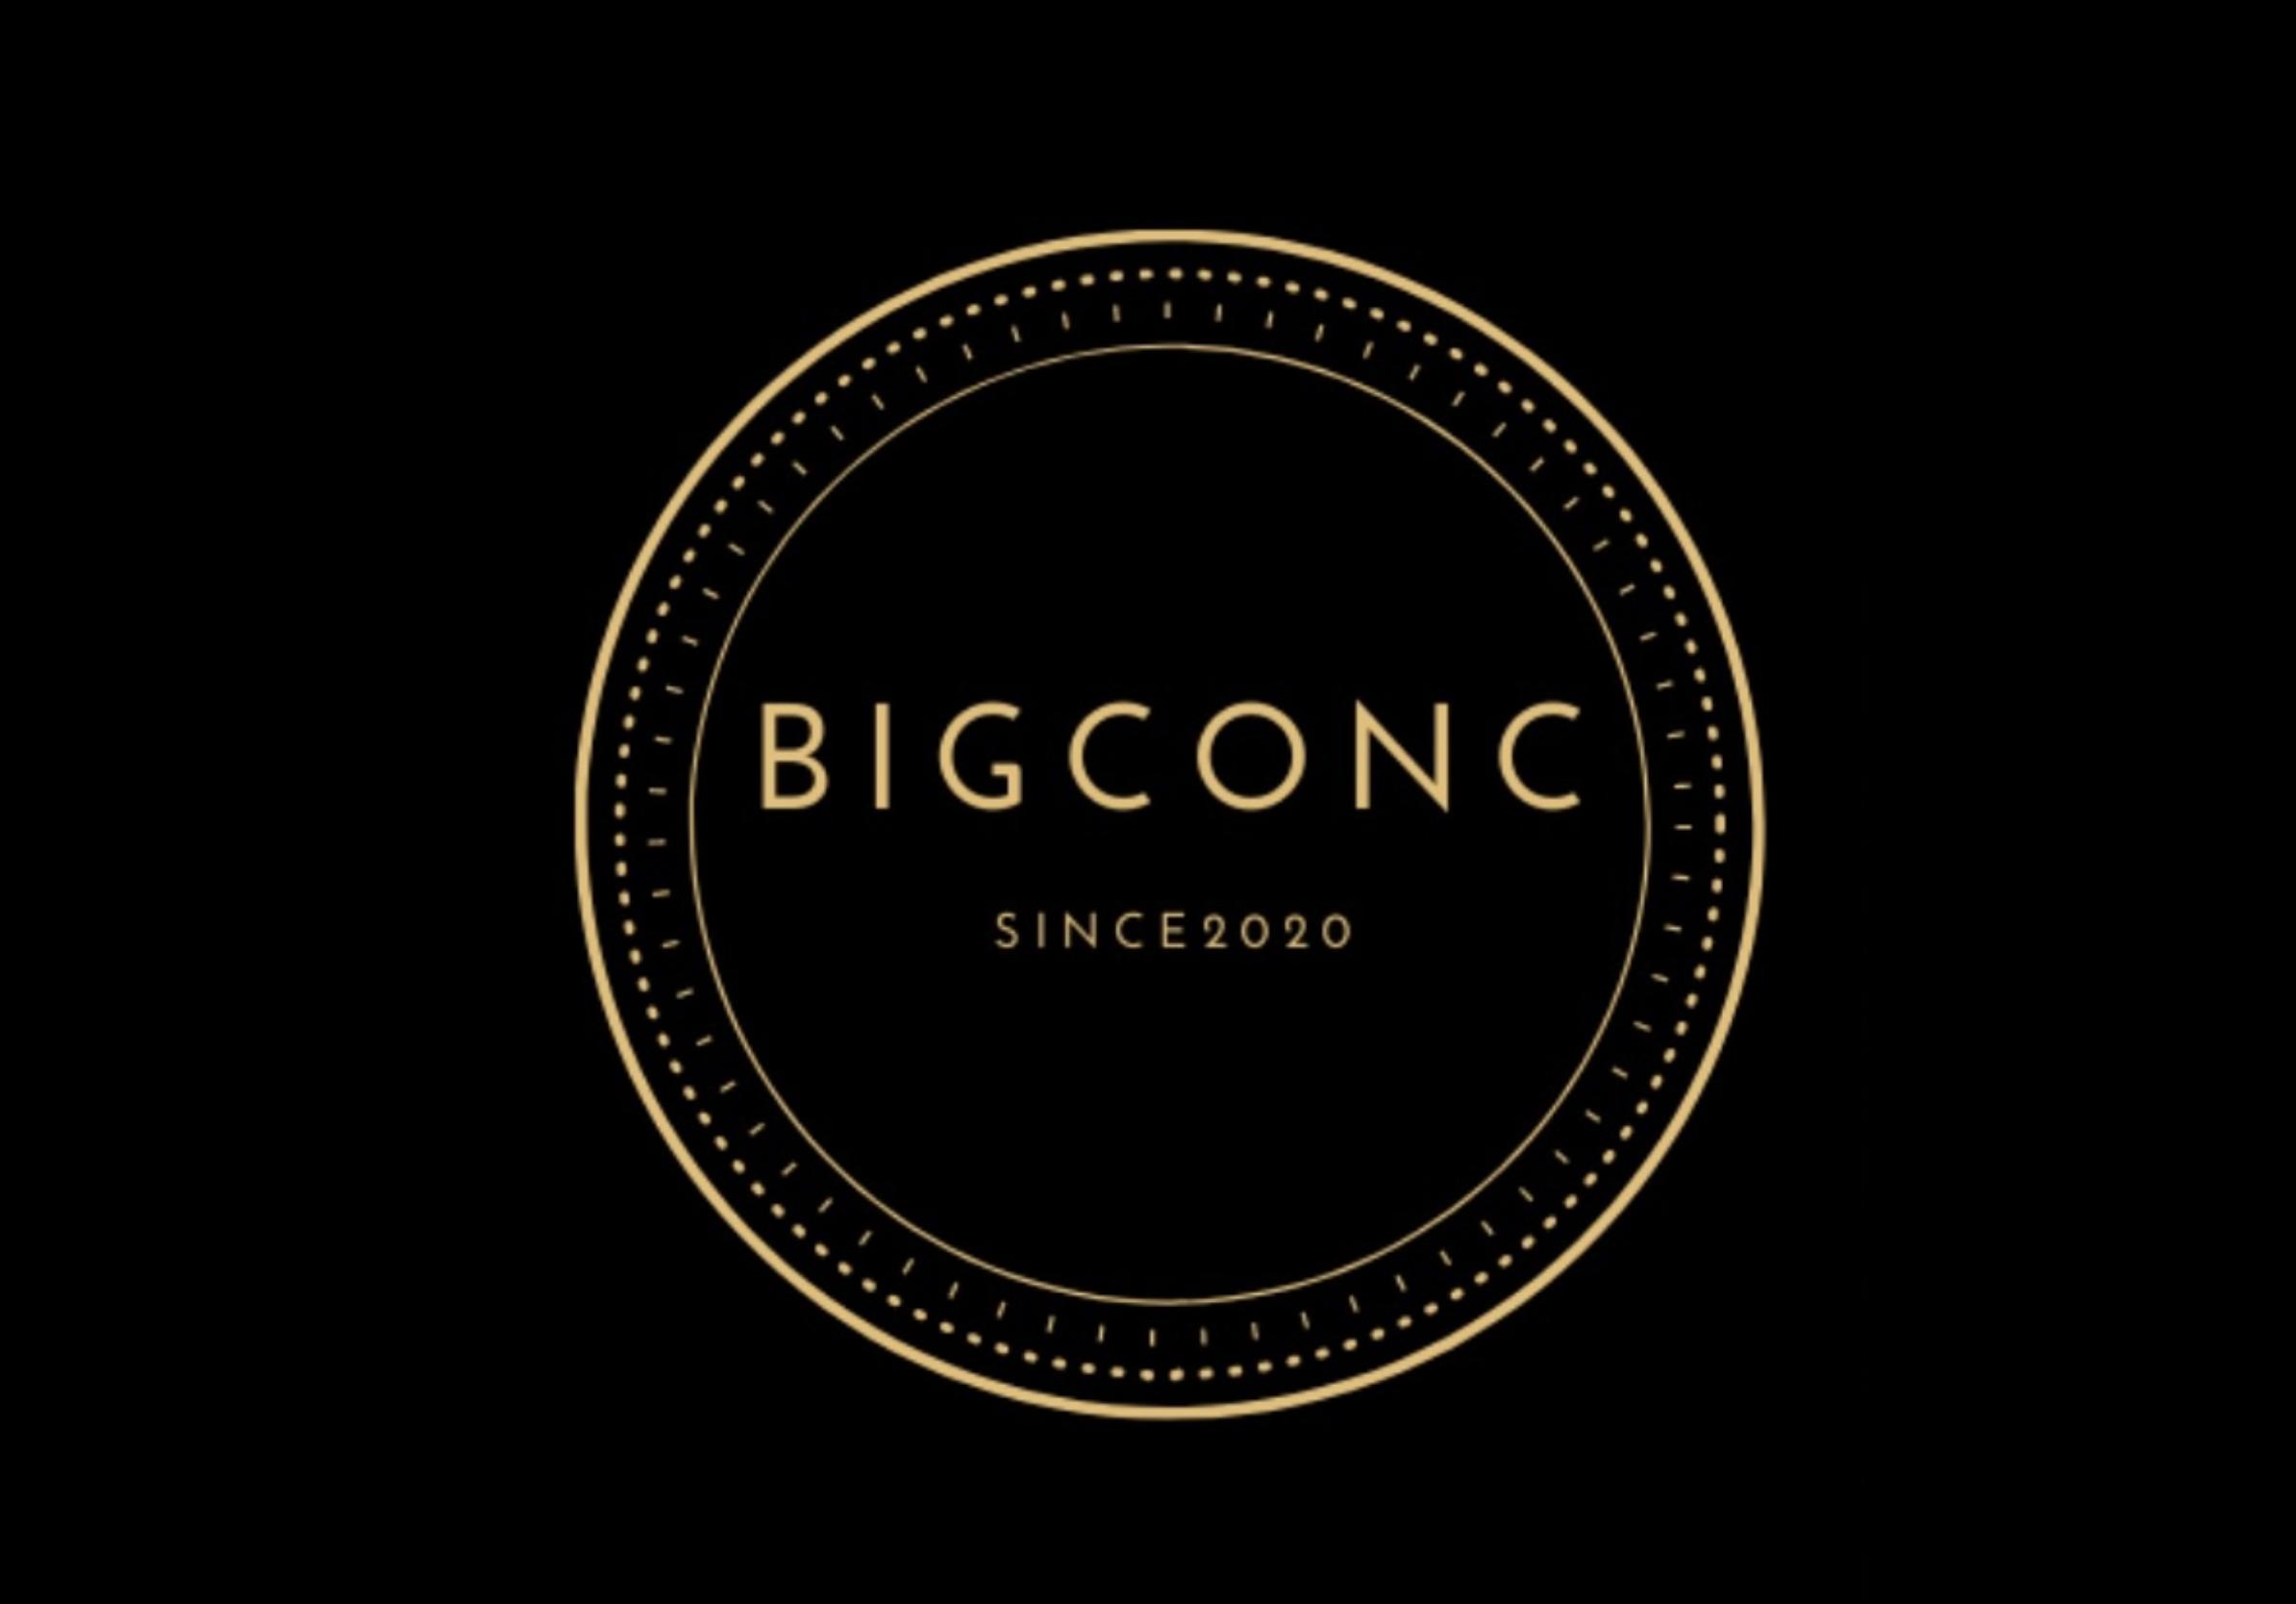 ソフトテニス振興会BIGCONC